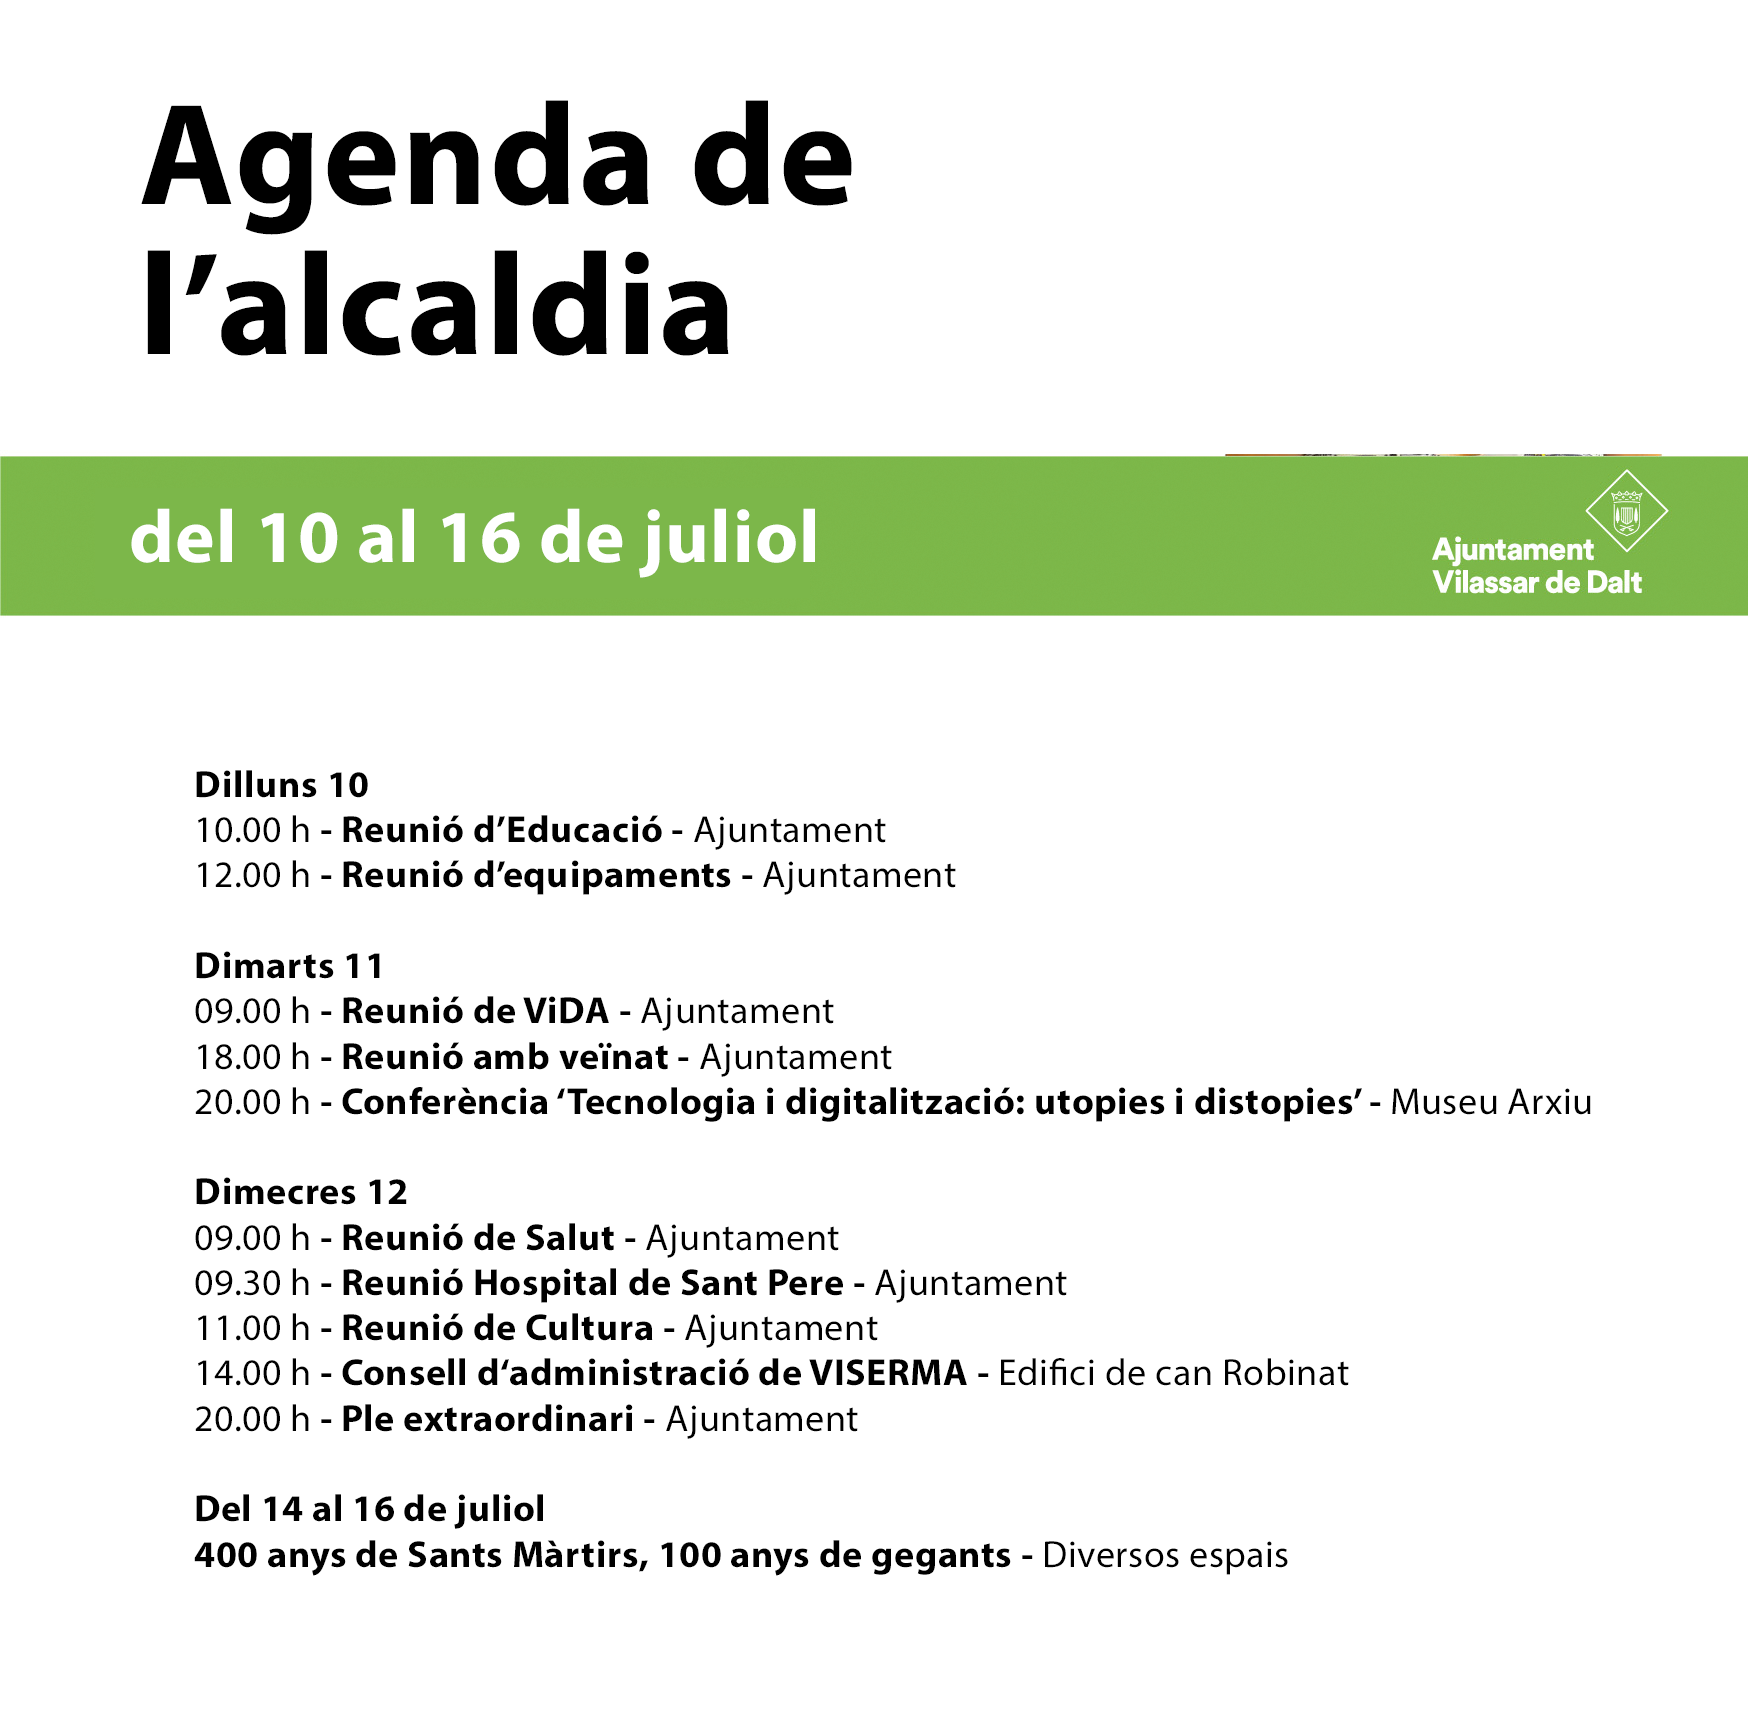 Agenda de l'alcaldia. Del 10 al 16 de juliol